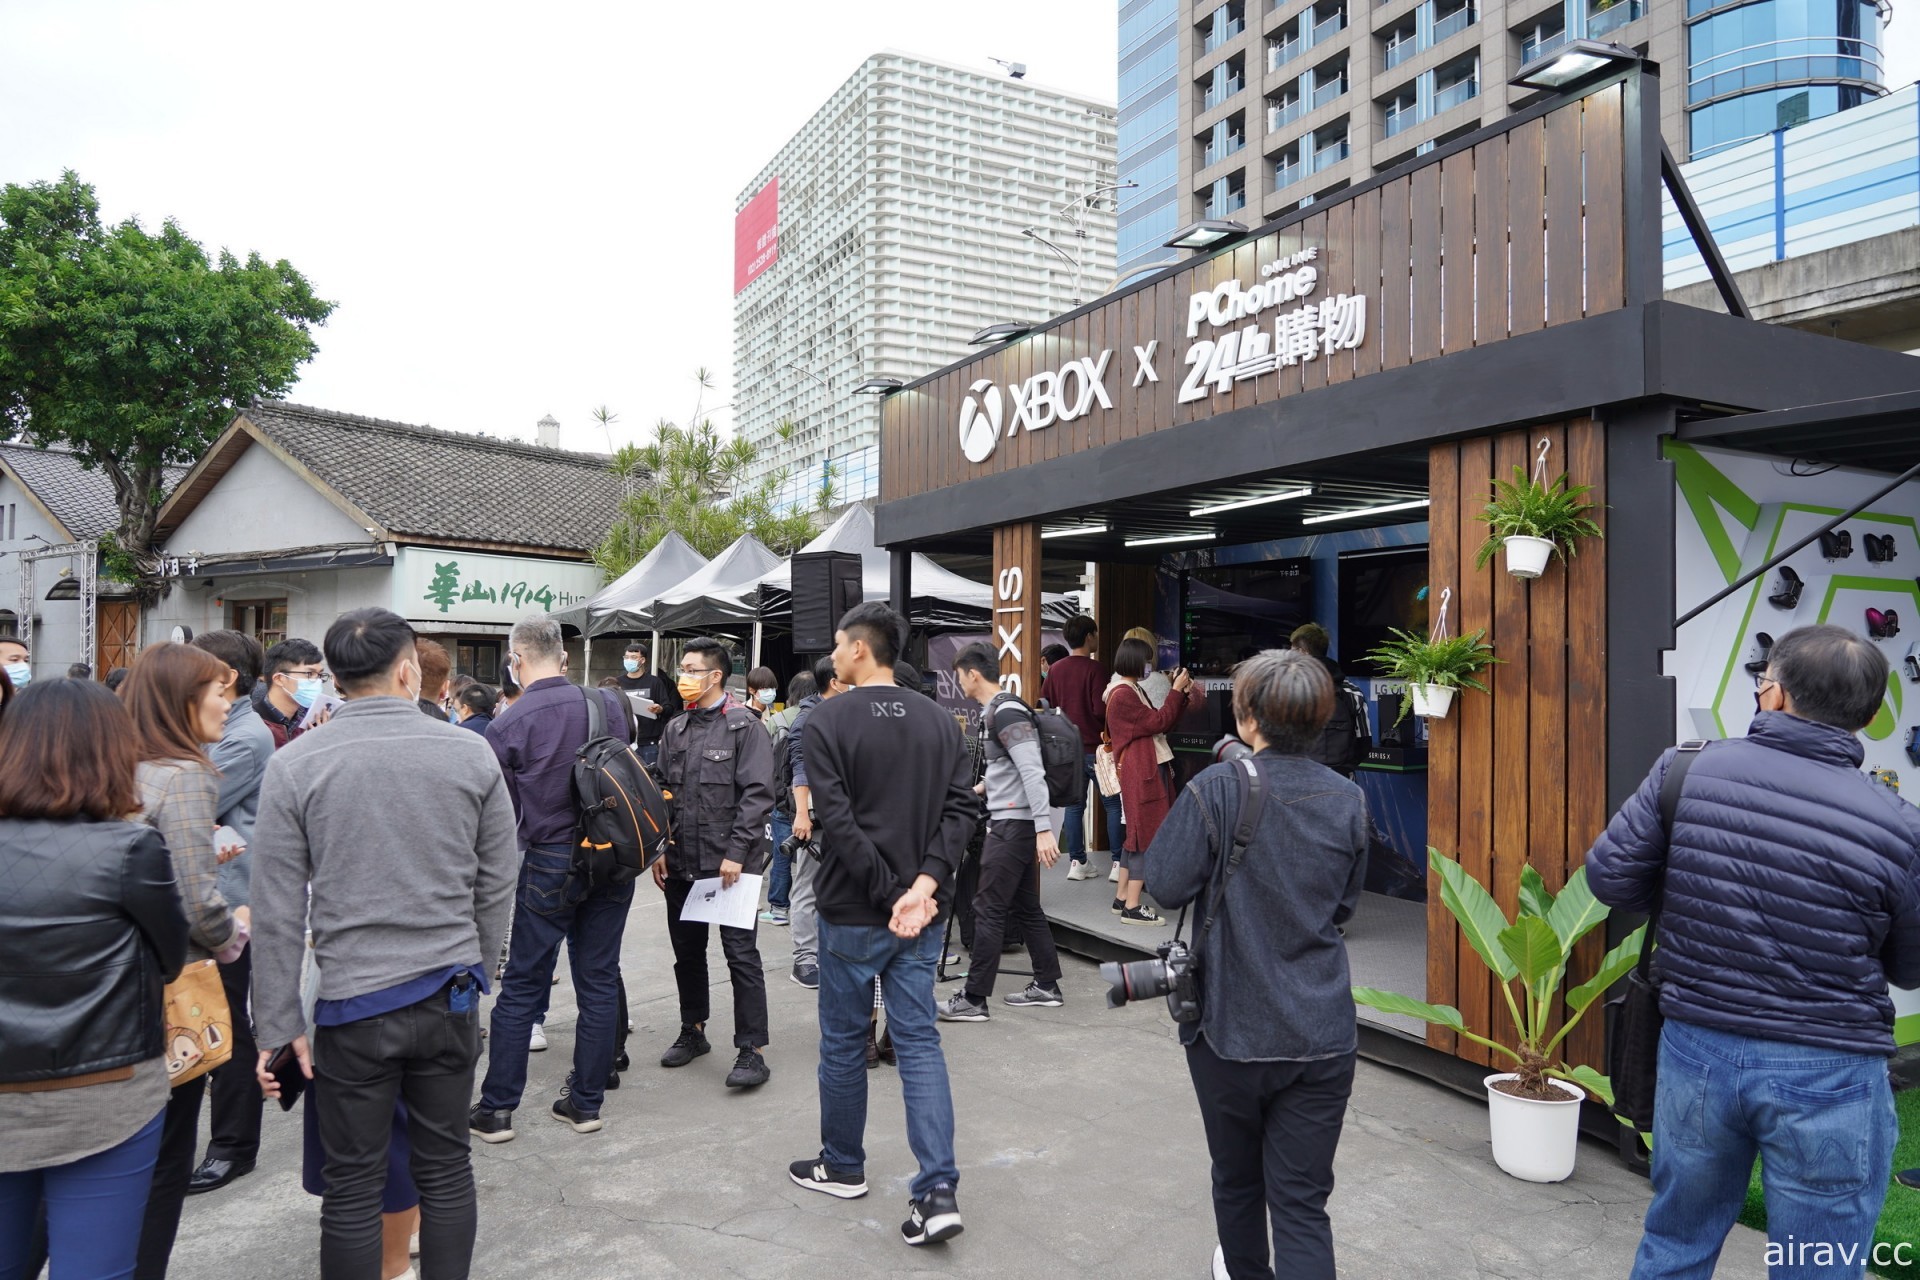 全球唯一！ Xbox Series X | S 台湾首卖会今日热烈登场 热情玩家彻夜等候拔得头筹